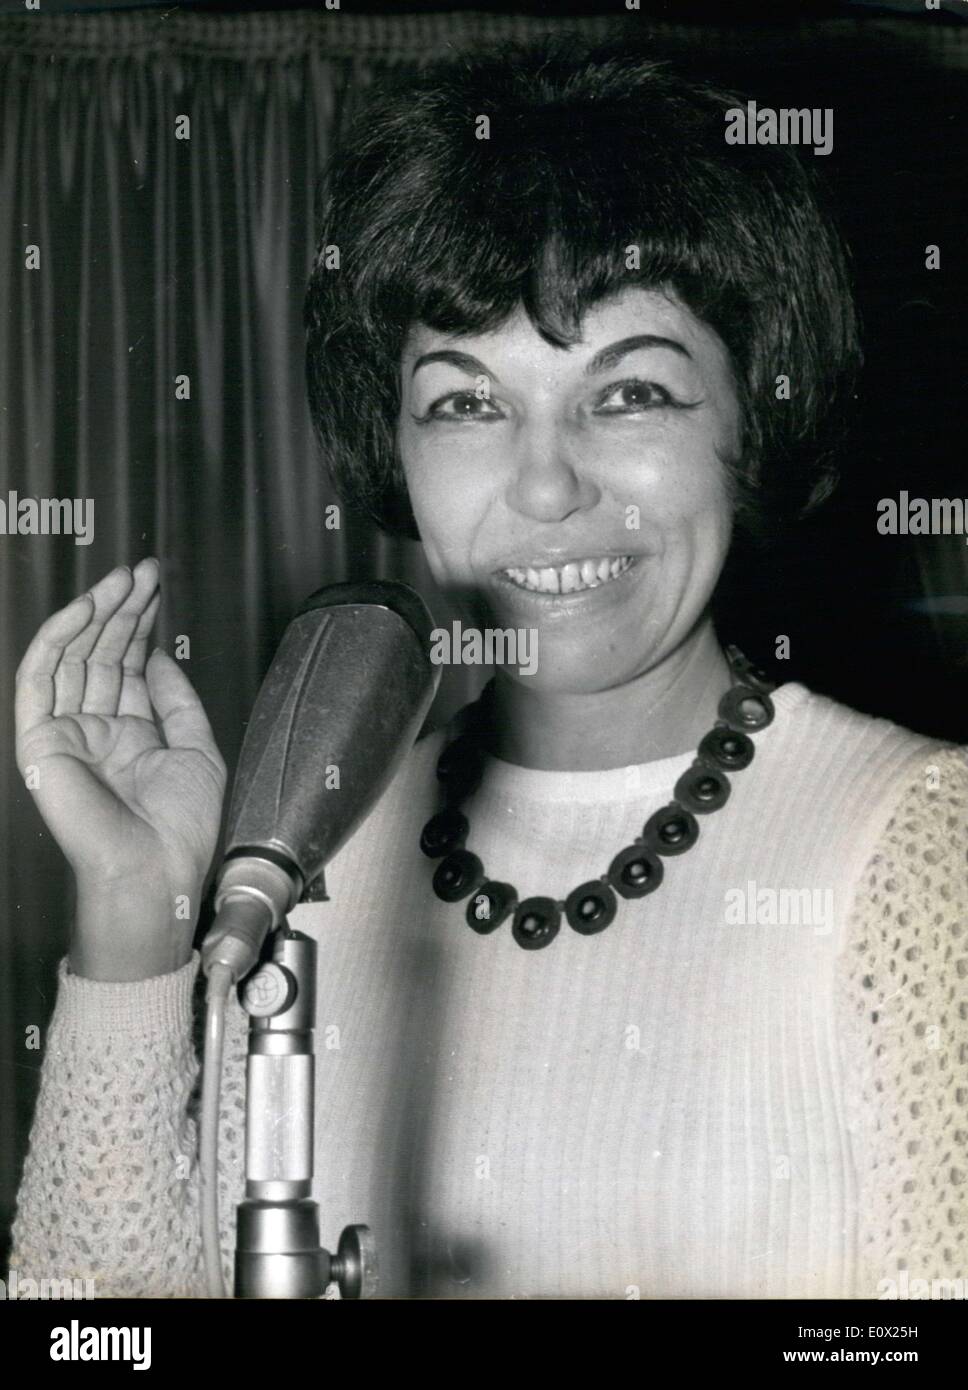 Febbraio 13, 1965 - Mimi Perrin, che dirige il gruppo vocale "doppio-Sei'' appena vinto un Oscar della Accademia di Musica Jazz. Imag Foto Stock